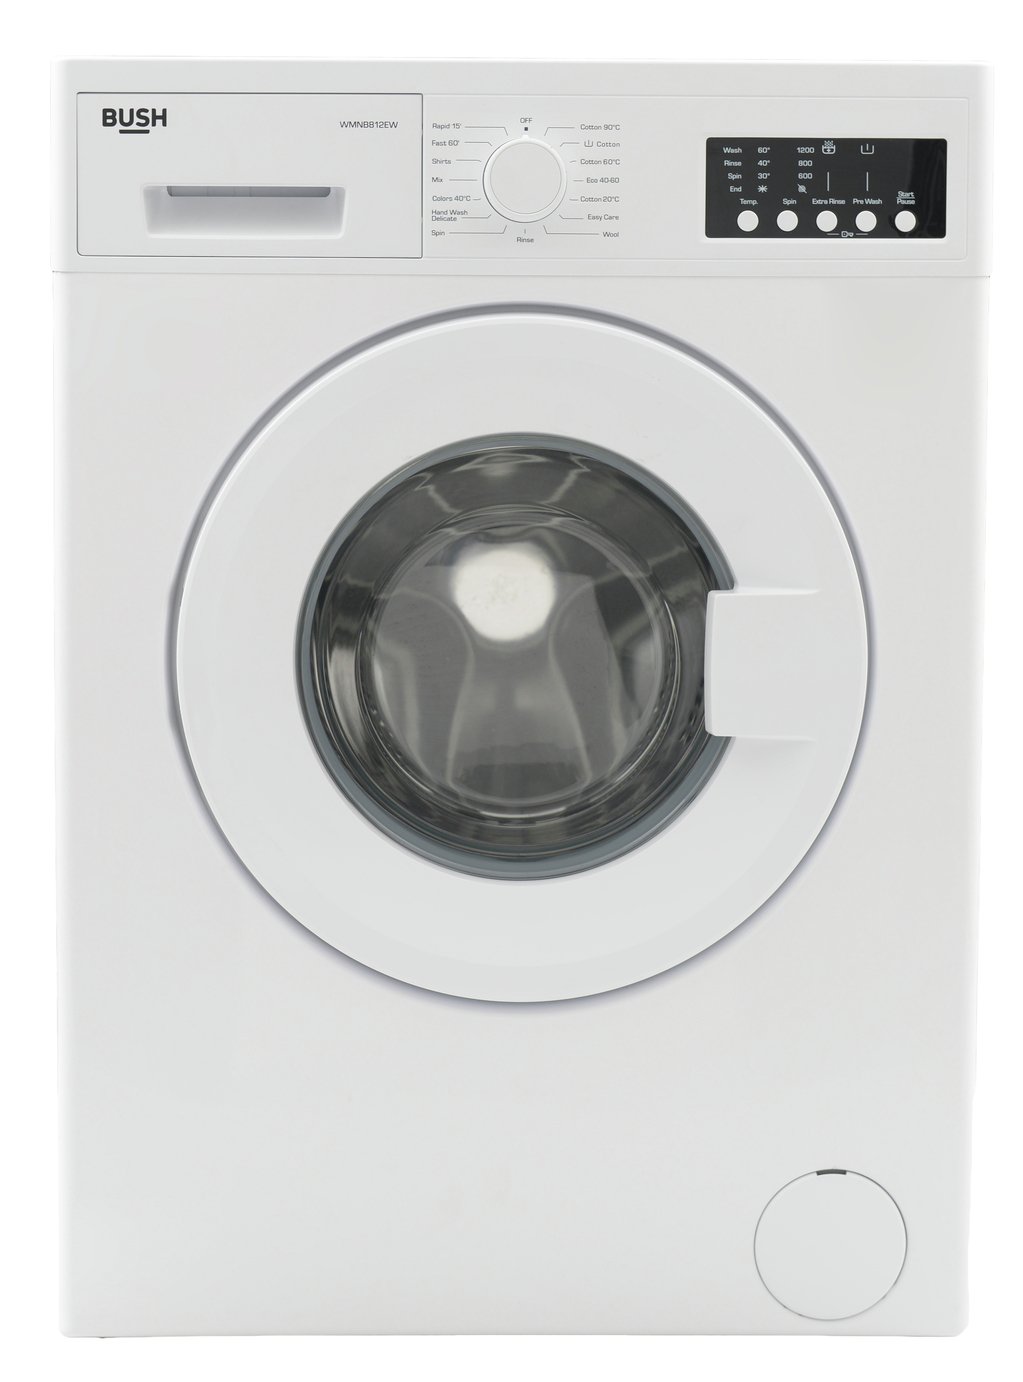 Bush WMSAE812EW 8KG 1200 Spin Washing Machine - White